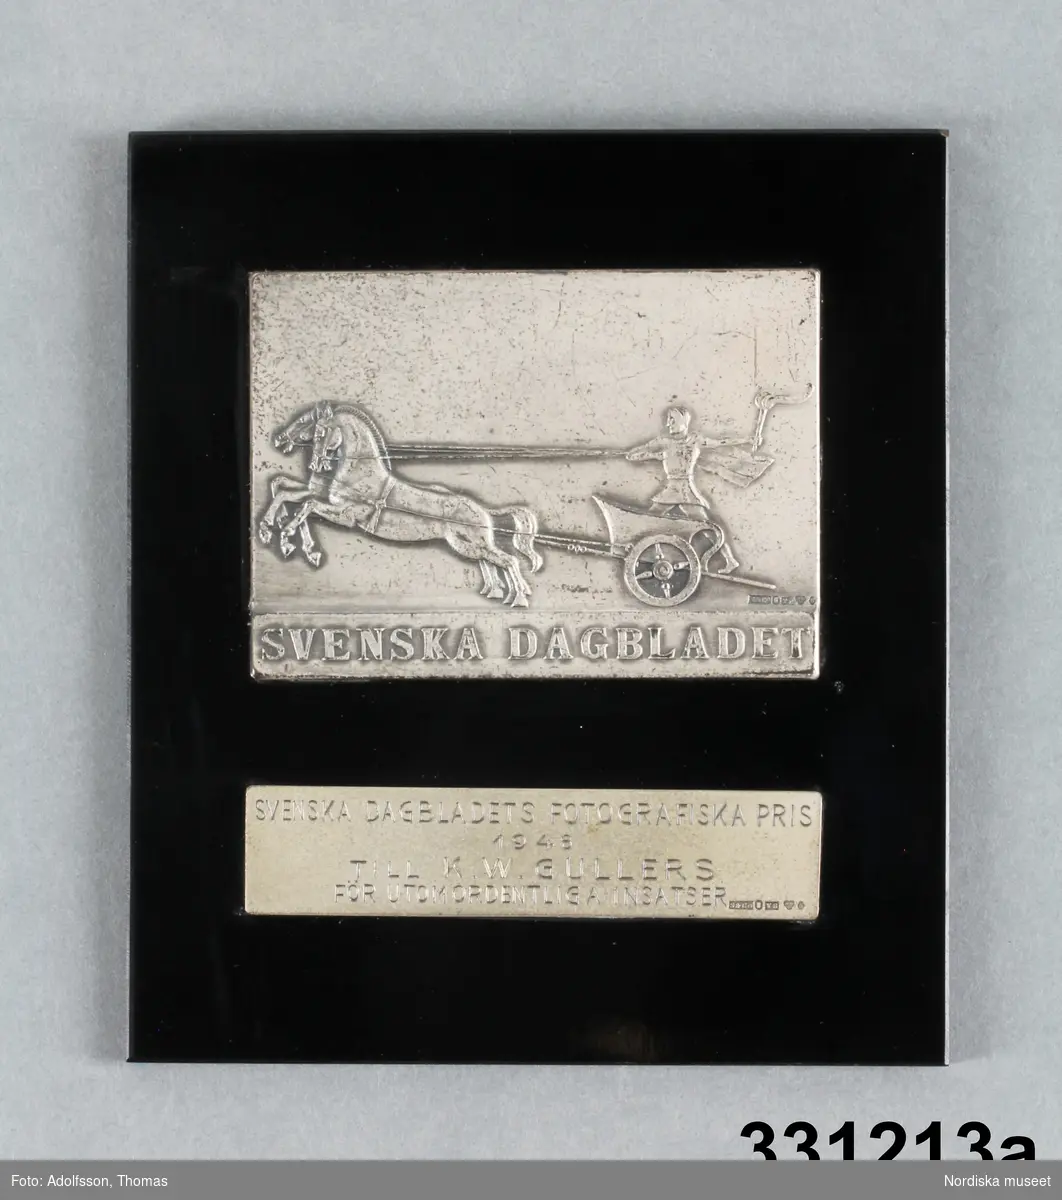 a) Medalj
b) Etui

a) Medalj/plakett, rektangulär svart platta av konstmaterial. På framsidan infattat två rektangulära silverplåtar. Den övre med relief i form av romersk krigare med fackla åkande i vagn dragen av två hästar och text "SVENSKA DAGBLADET". Den nedre silverplåten graverad text "SVENSKA DAGBLADETS FOTOGRAFISKA PRIS / 1948 / TILL K. W. GULLERS / FÖR UTOMORDENTLIGA INSATSER."  Bägge silverplåtarna med silverstämplar, den övre: "S&Co / s:t Erik / T8 / kattfot (tre kronor) / S." Den nedre likadana stämplar förutom årsstämpel, som är  "Y8" istället. På baksidan liten triangulär hängare i metall, runda hål för kramporna som håller fast silverplåtarna
/Leif Wallin 2011-01-21